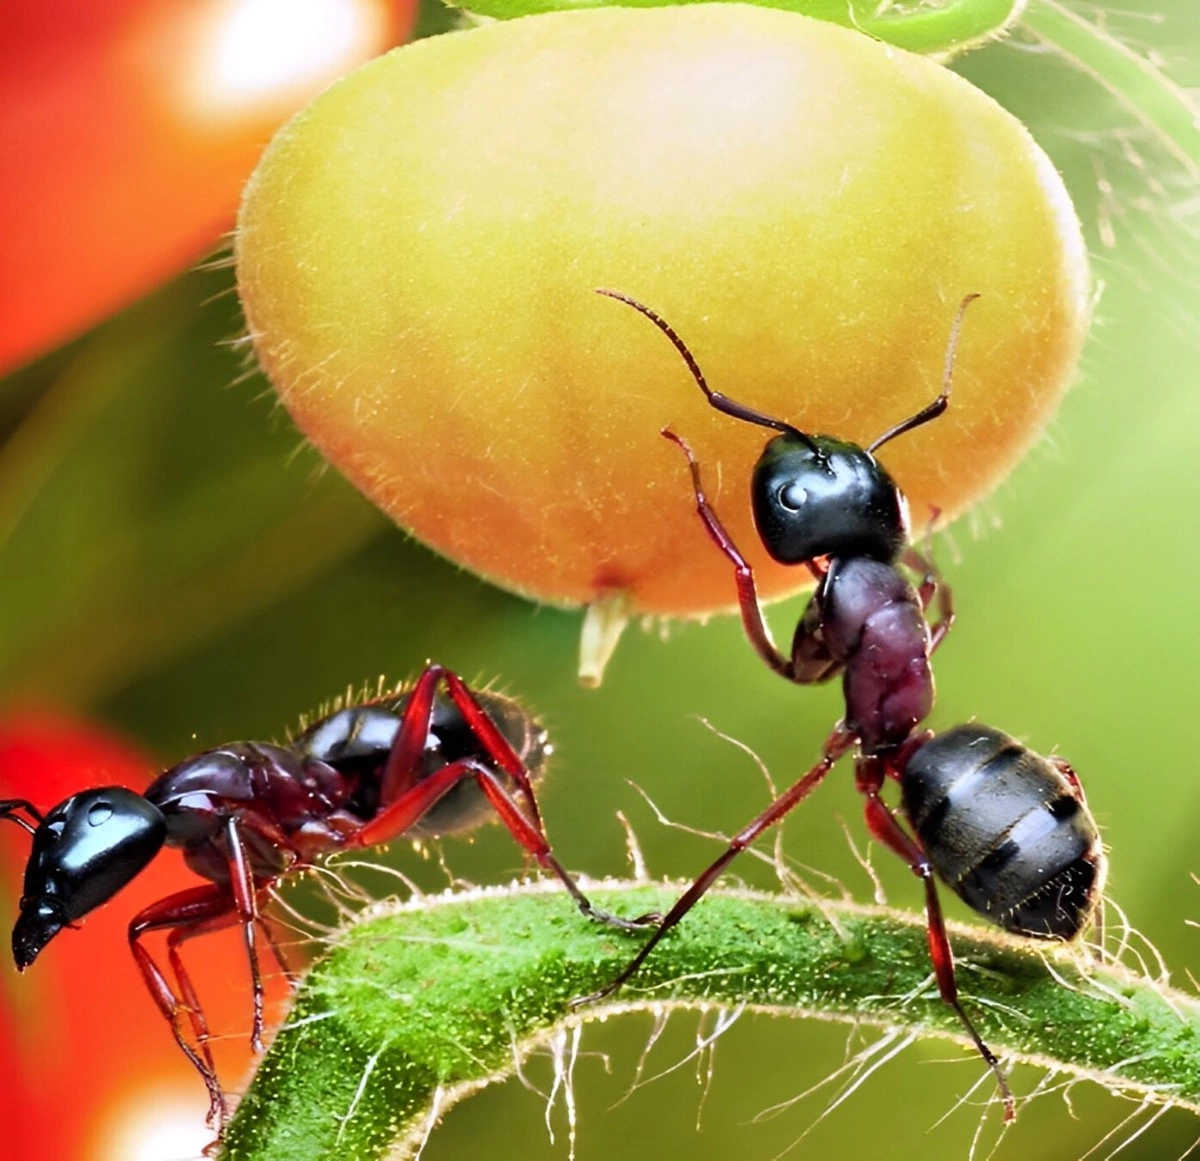 gros plan sur une fourmis soulevant une baie jaune a cote d une autre fourmis sur une branche fine verte